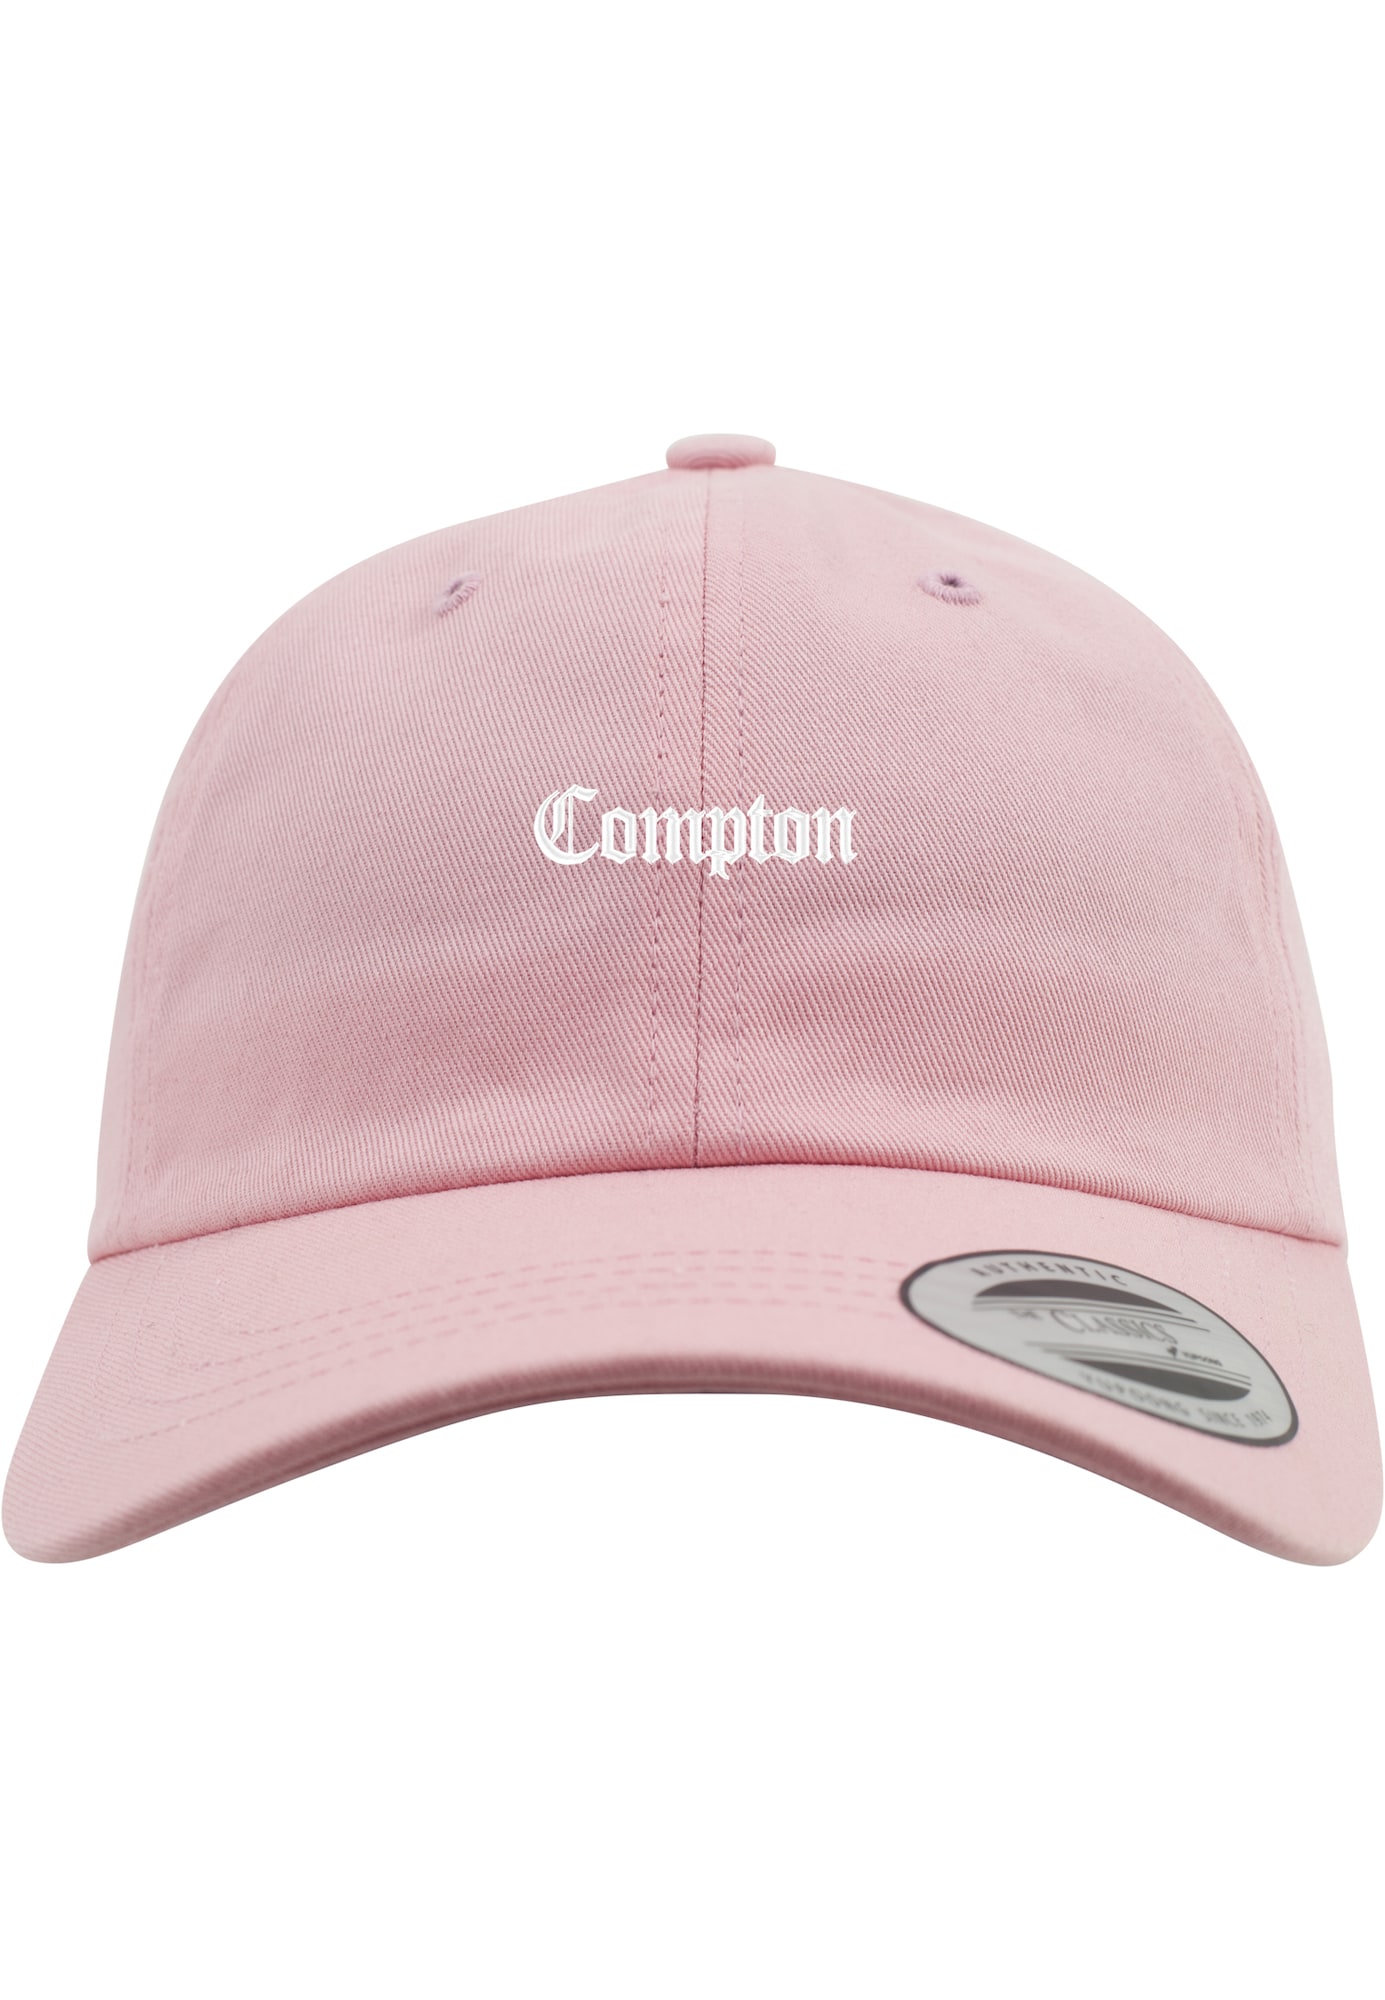 Mister Tee Kepurė 'Compton' pilka / šviesiai rožinė / balta